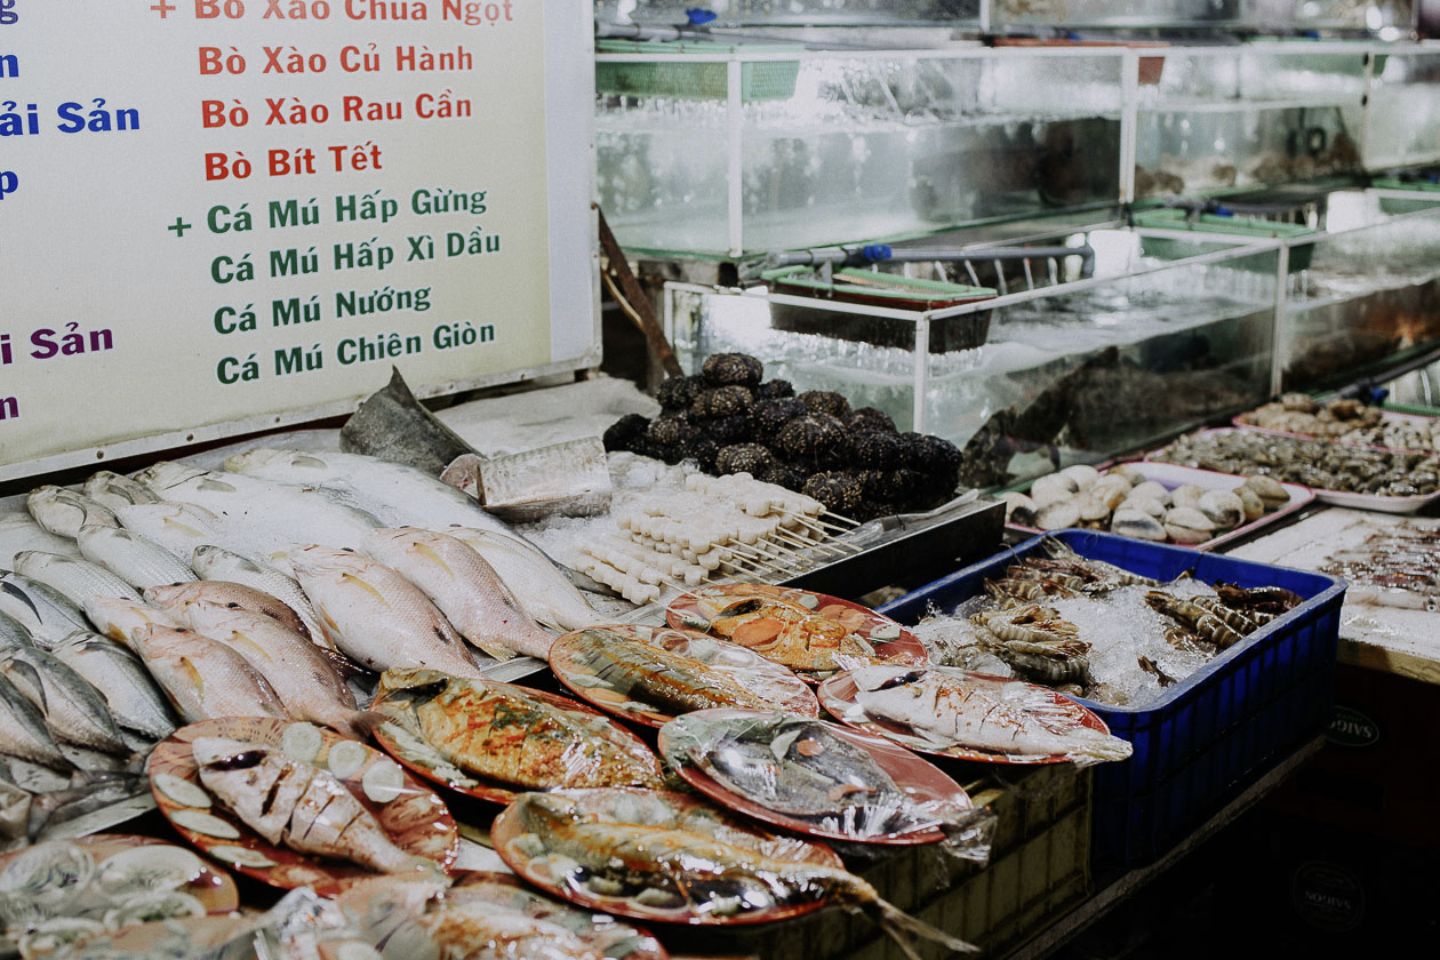 Chợ đêm Phú Quốc (chợ đêm Bạch Đằng) – Thế giới ẩm thực nhộn nhịp khi đêm về 6